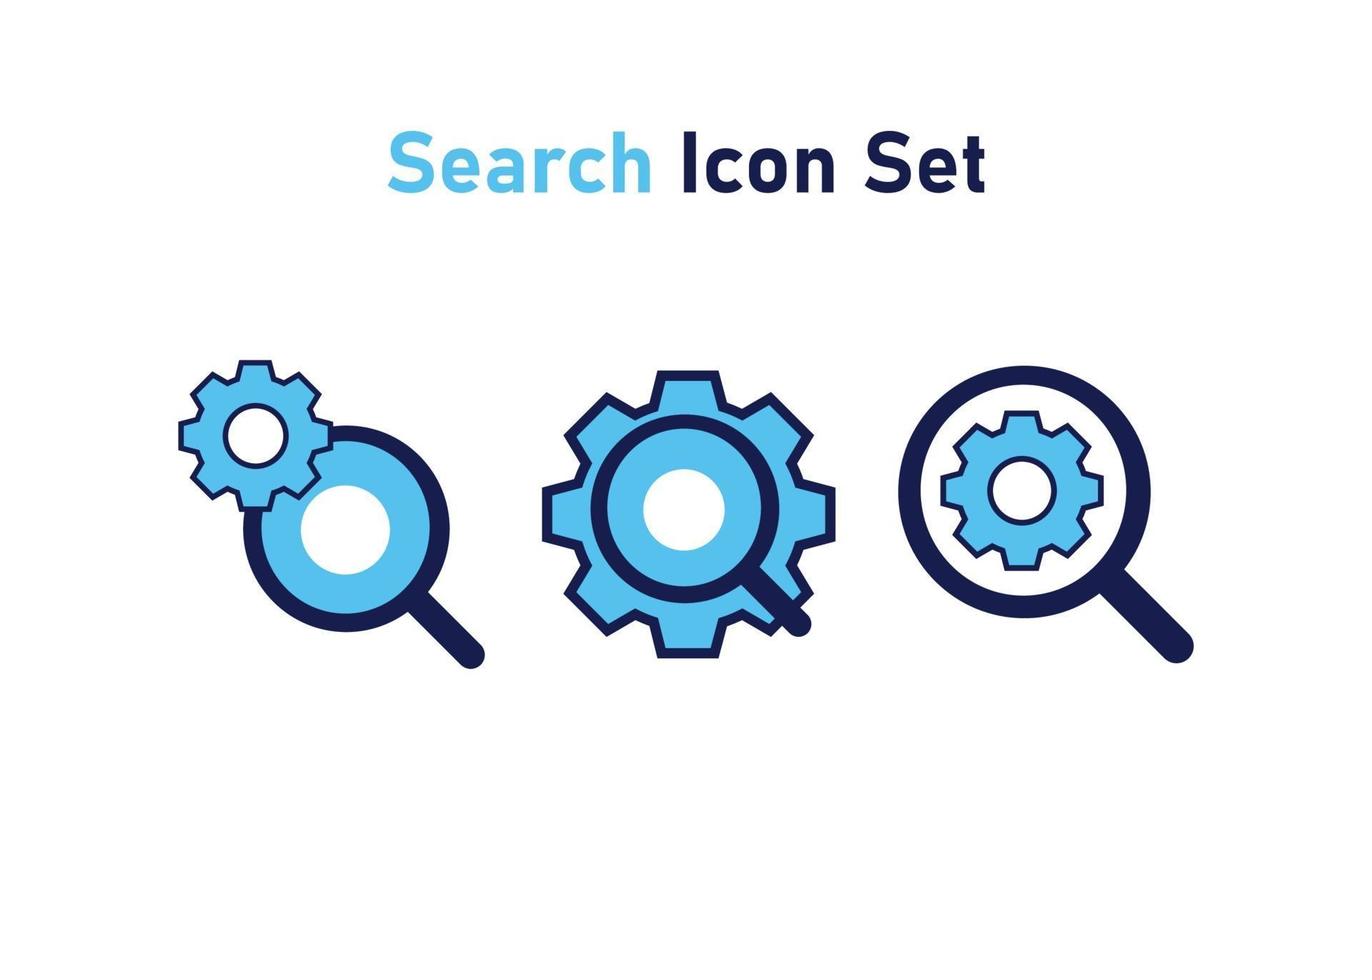 Ikonuppsättning med söksymbol. begreppet sökinställning. vektor illustration, vektor ikon koncept.